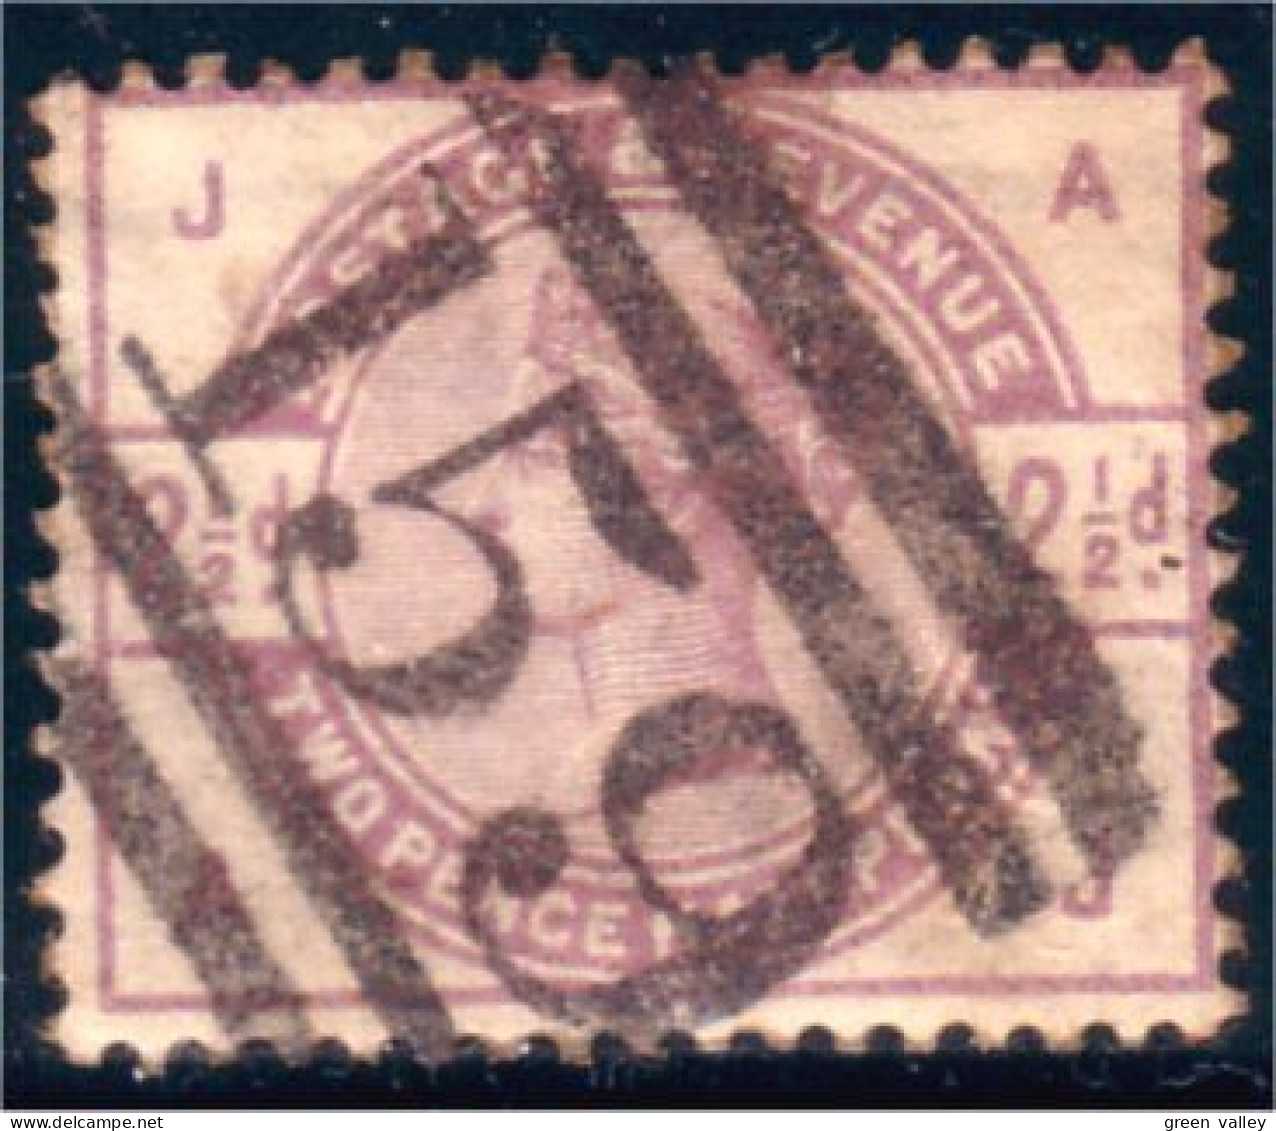 410 G-B 1883 2 1/2p Lilac (GB-80) - Gebraucht